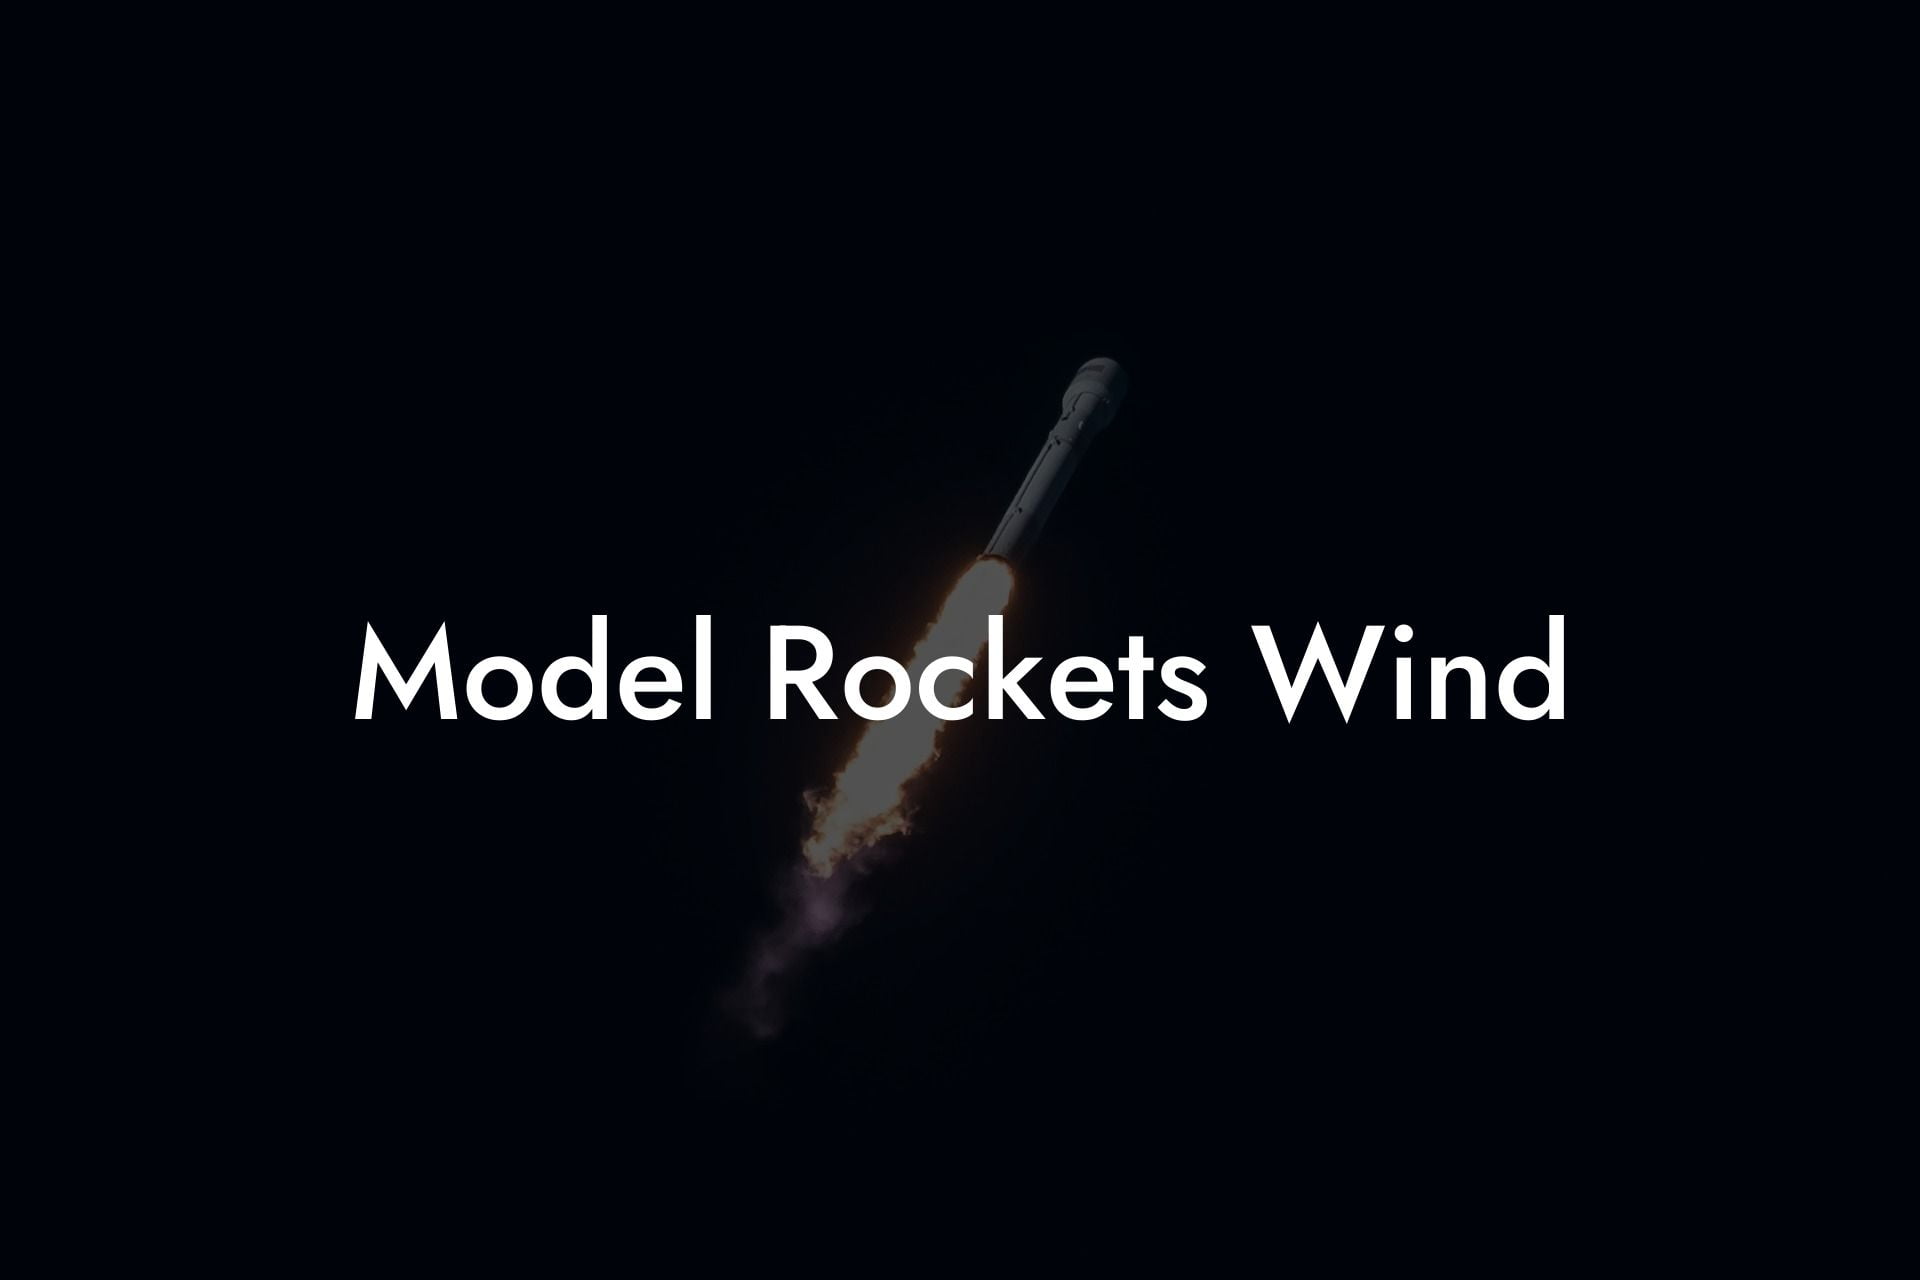 Model Rockets Wind